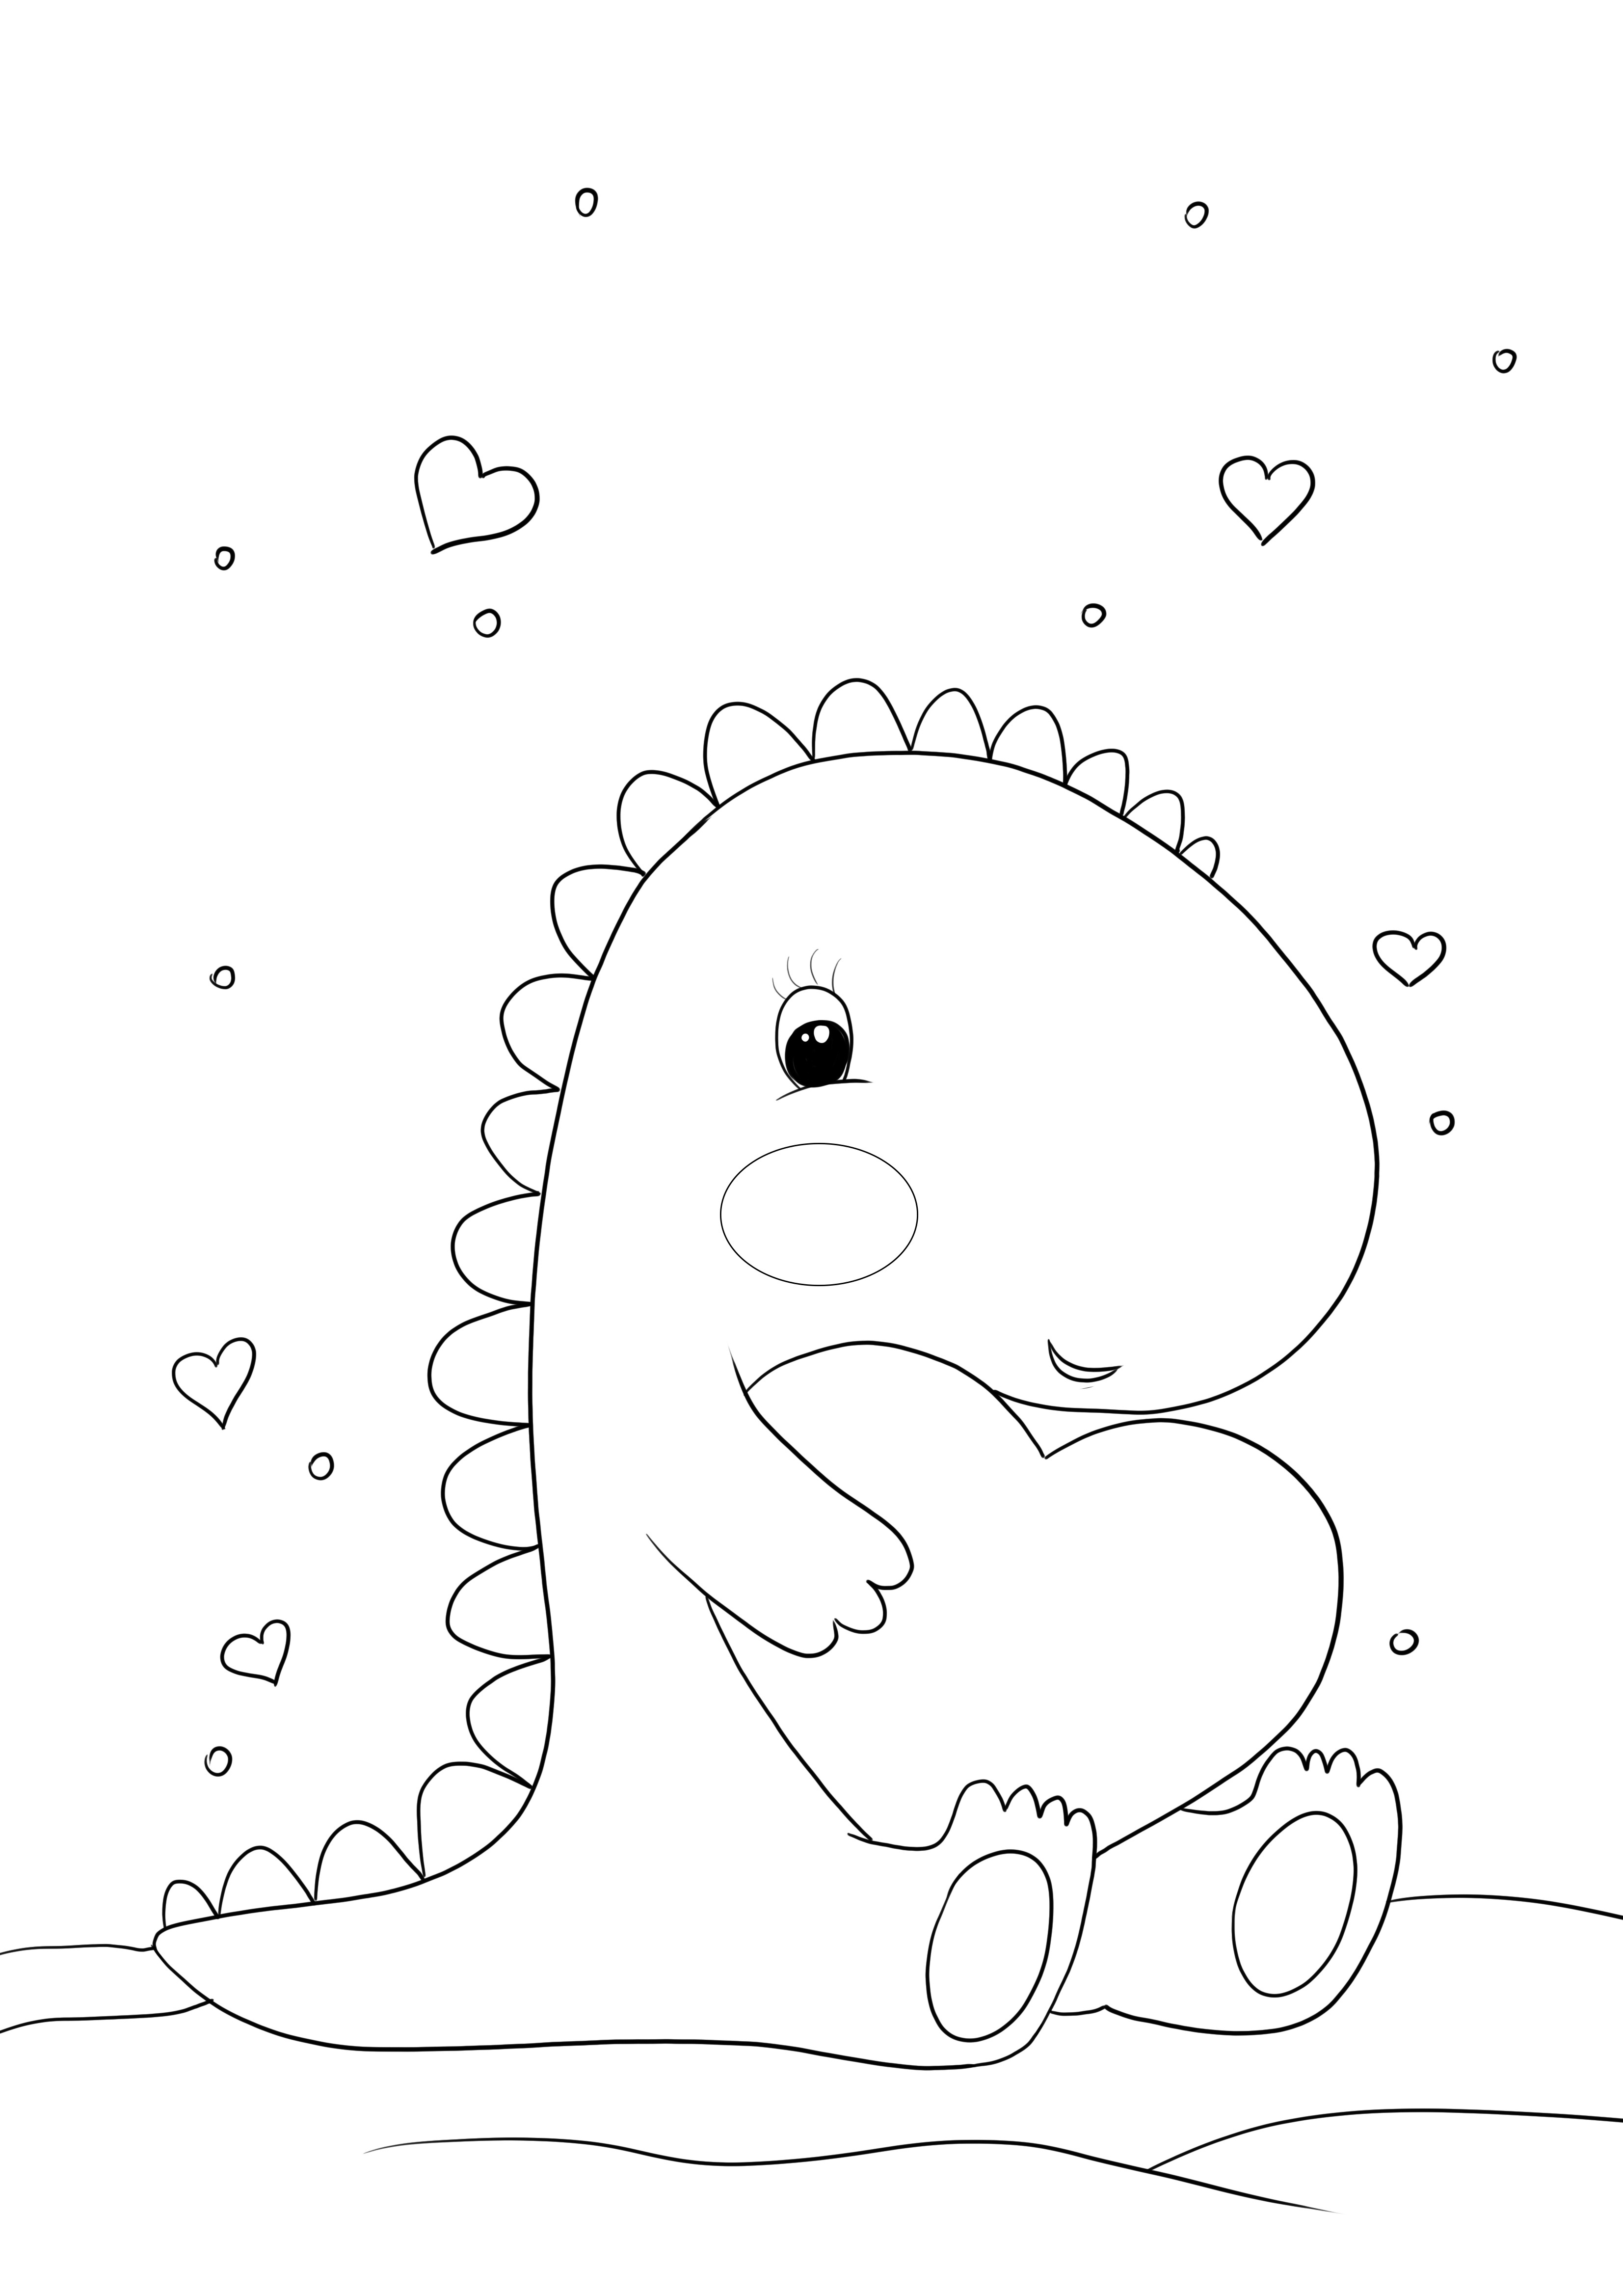 Dibujo de dinosaurio kawaii con corazón para imprimir y colorear gratis para niños